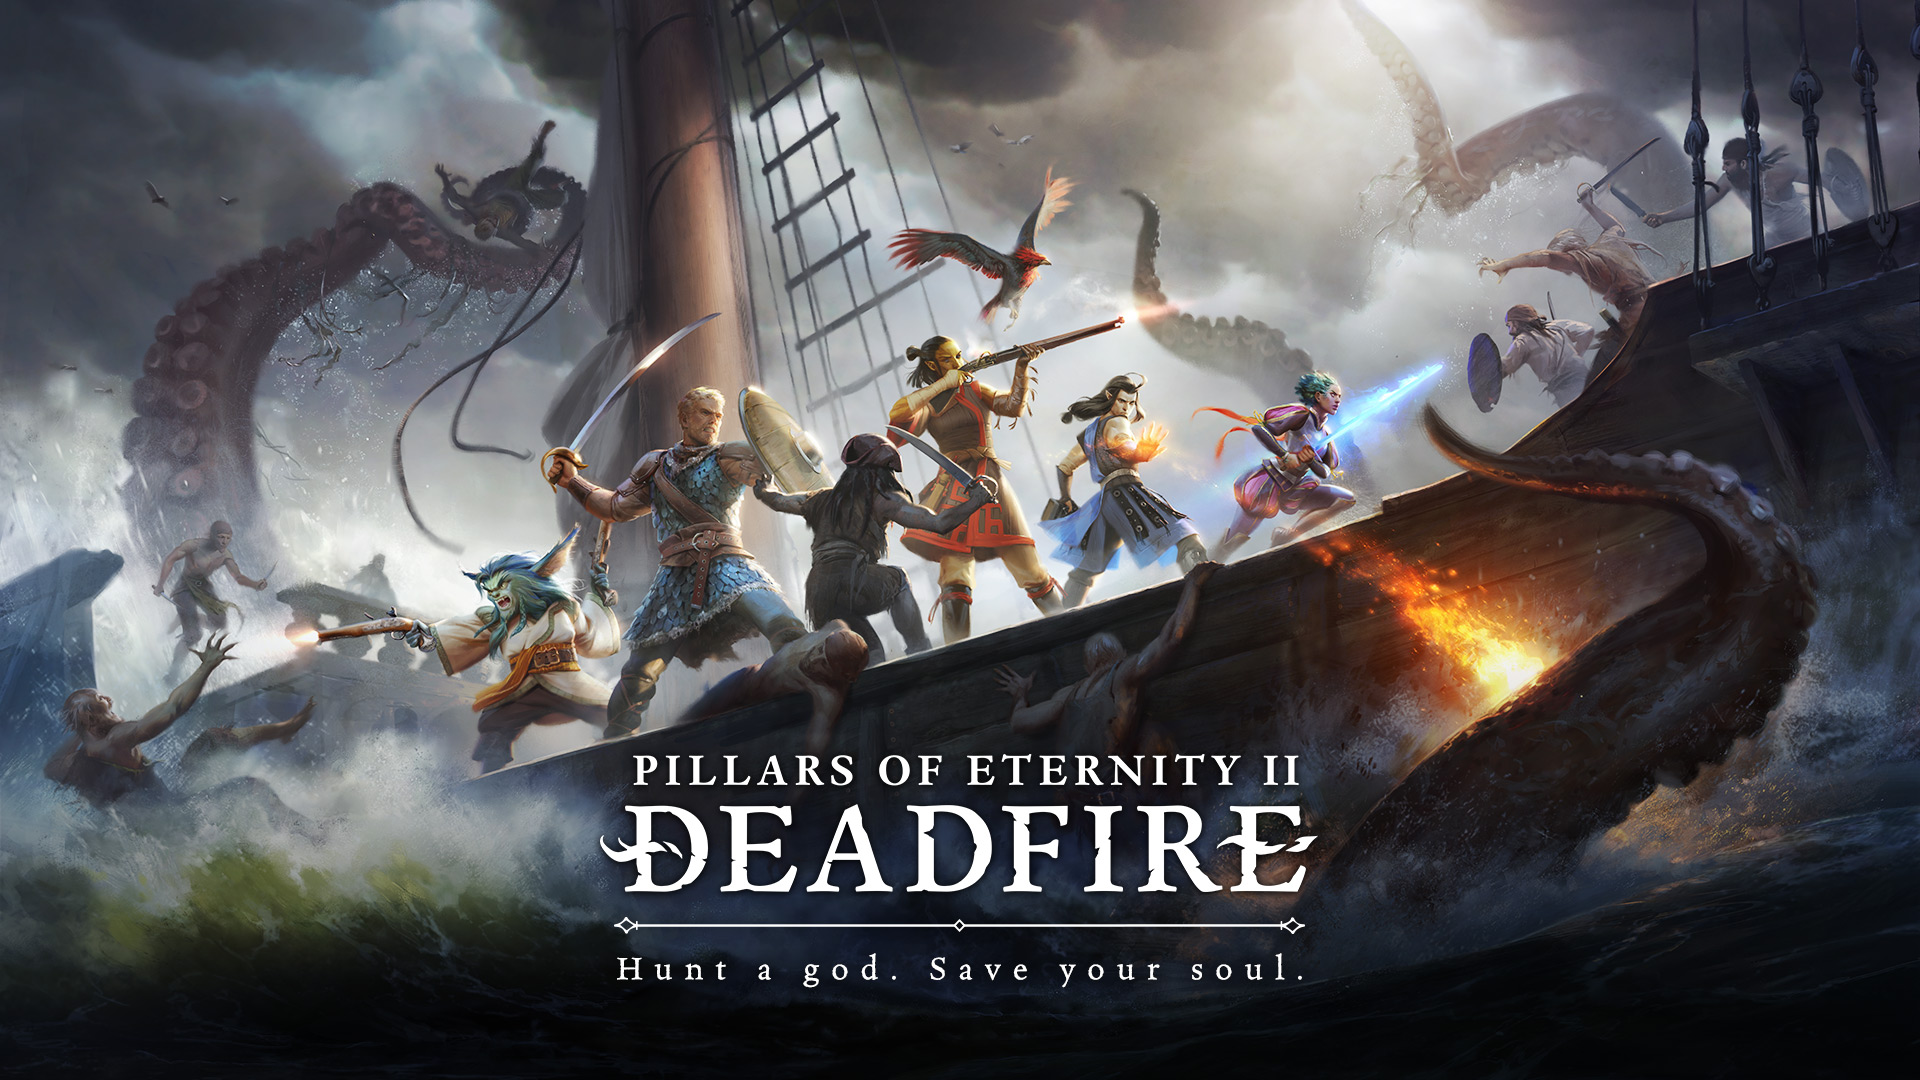 Pillars of eternity ii : deadfire